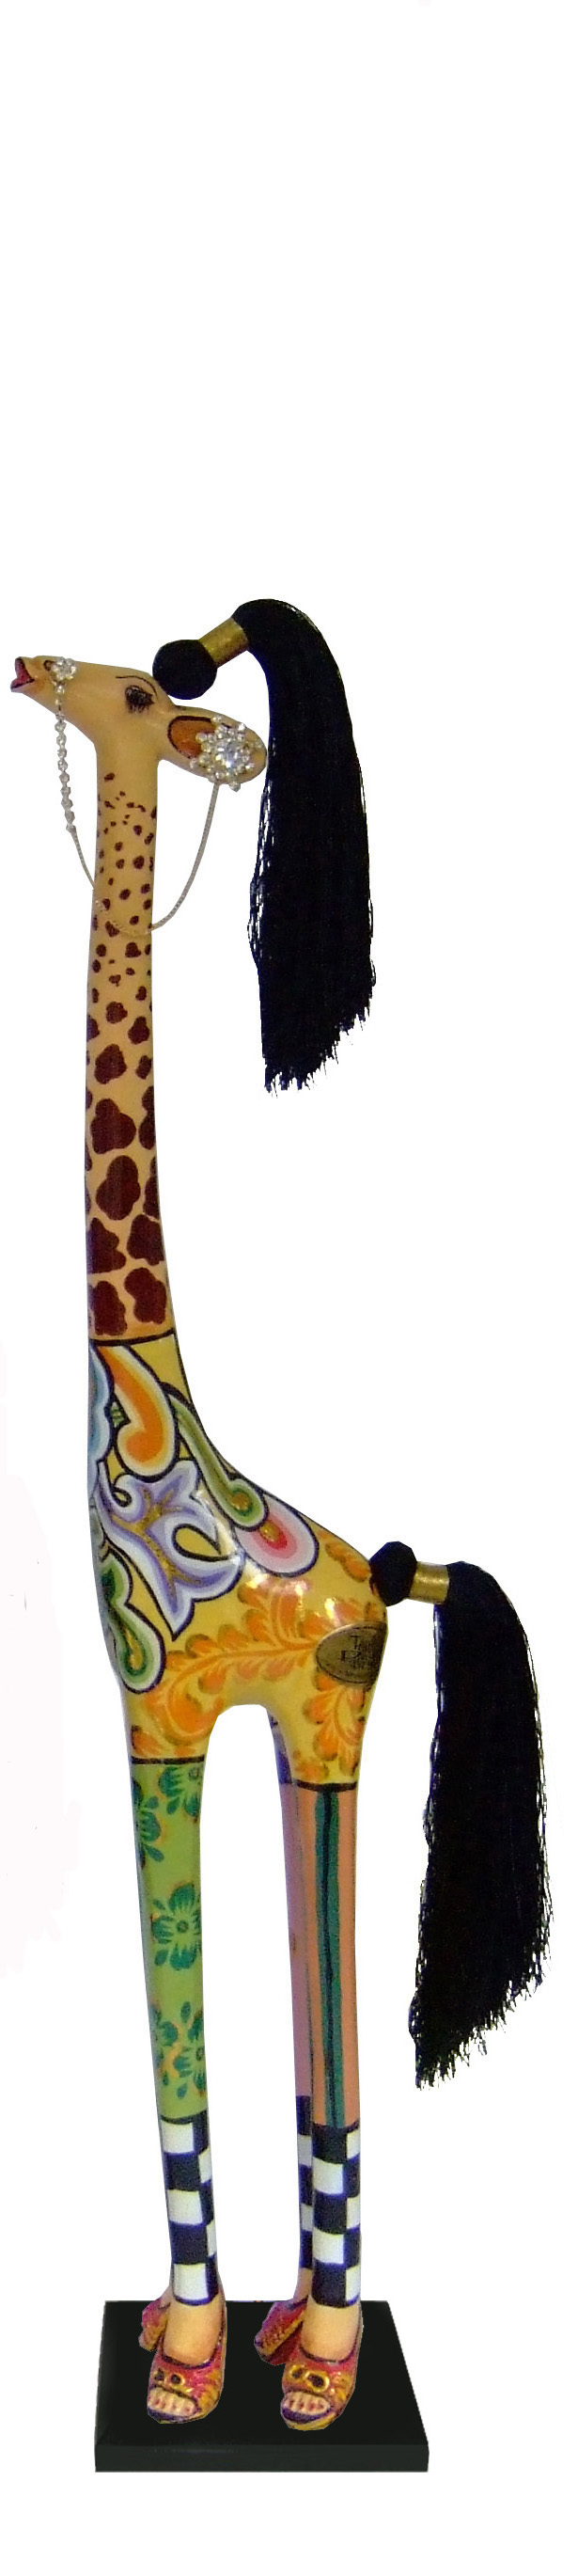 toms-drag-giraffe-carmen-s-4043